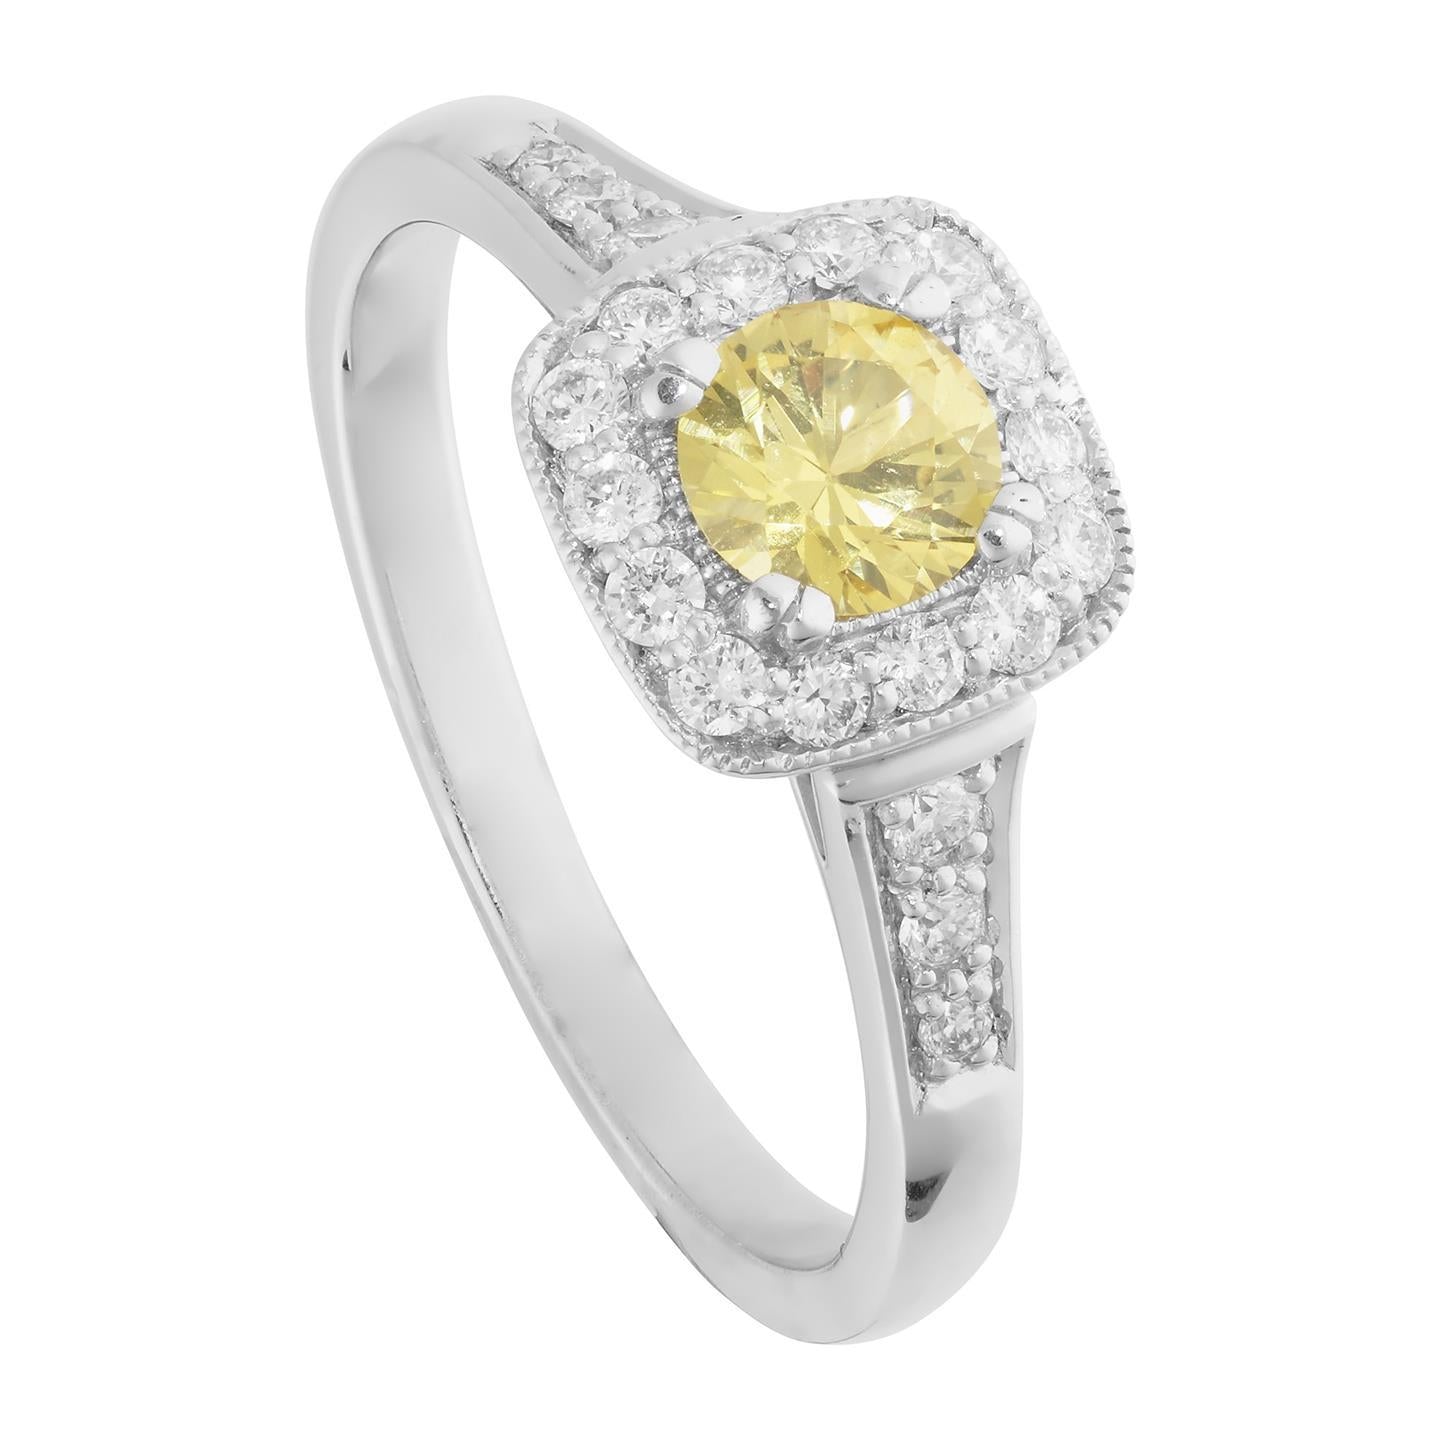 Anello solitario con accento 3.5 ct di zaffiro giallo e diamanti - harrychadent.it